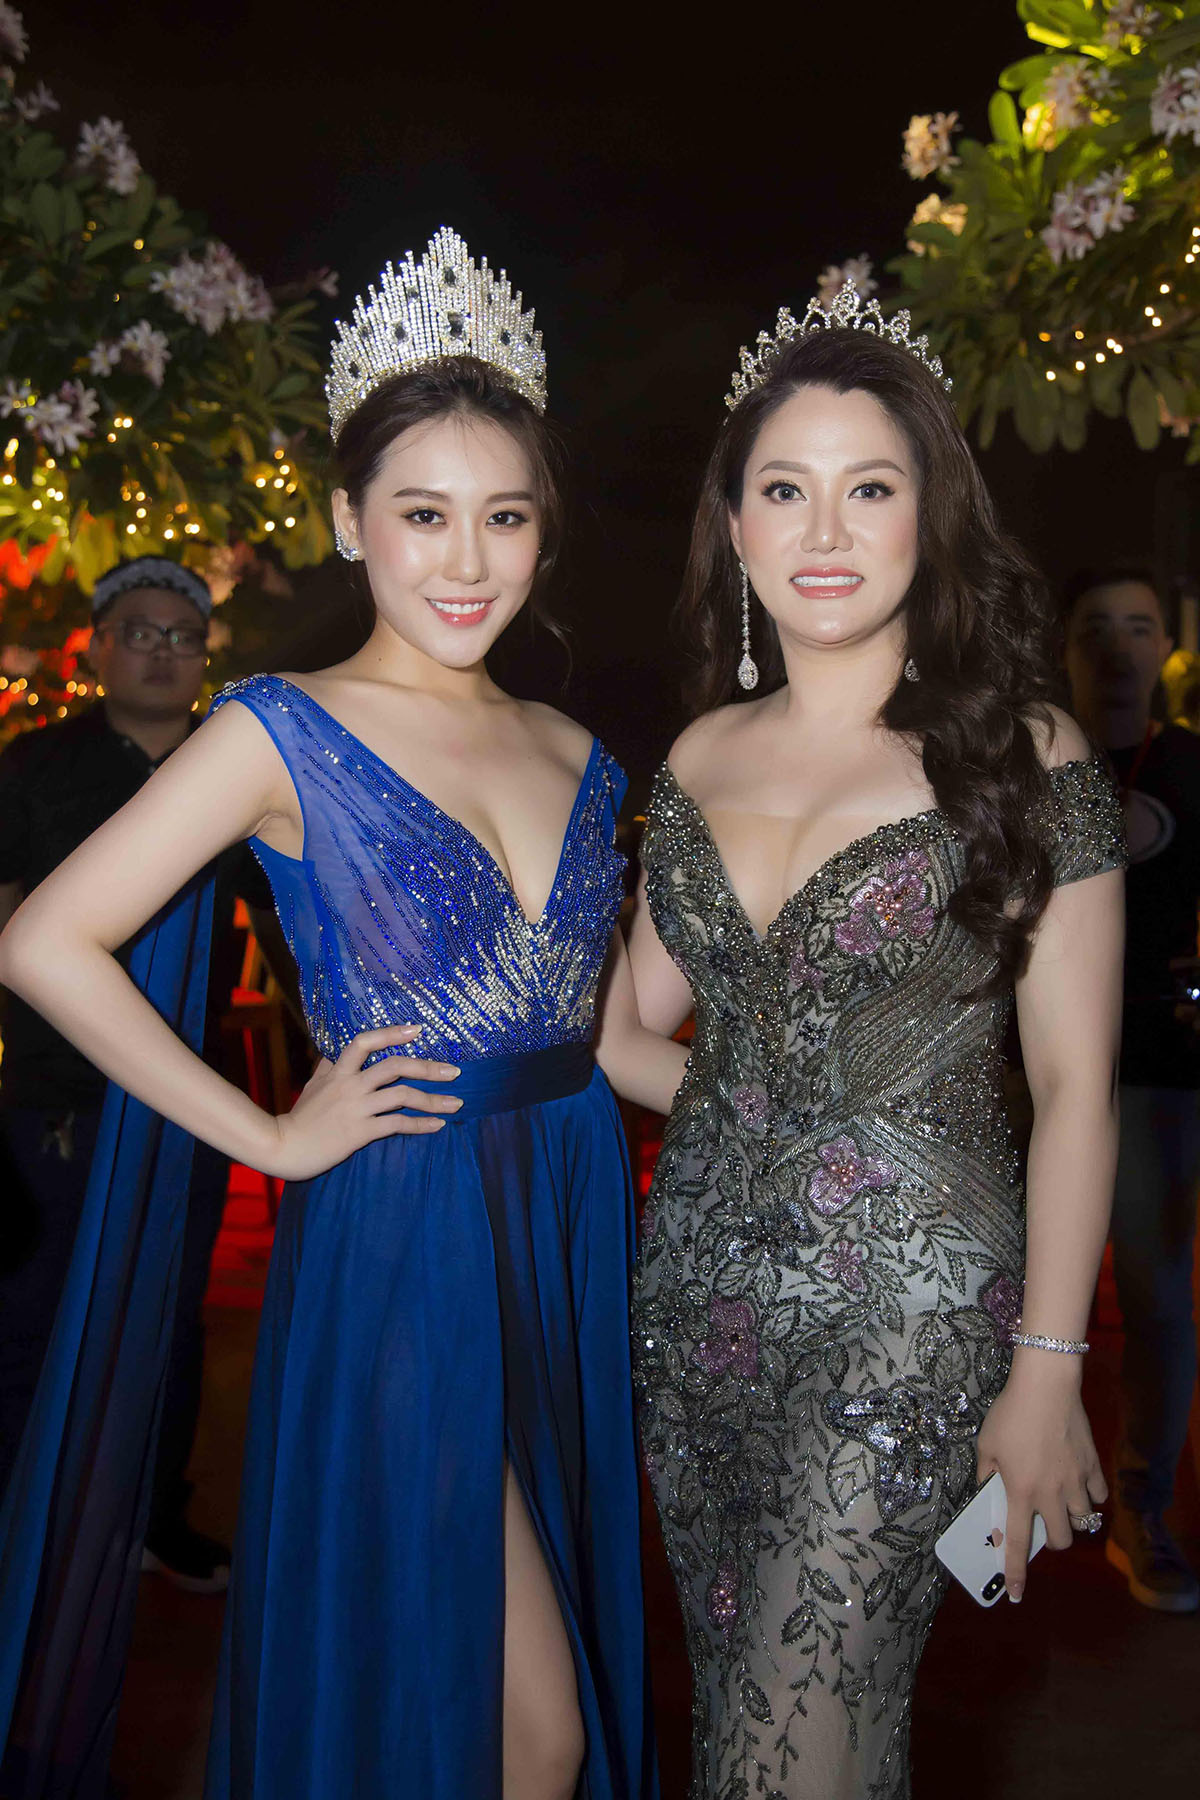 Bằng Kiều, Jennifer Phạm và dàn sao khủng 'đội mưa' mừng Hoa hậu Mỹ Vân ra mắt 'Ms. Vietnam New World 2018'